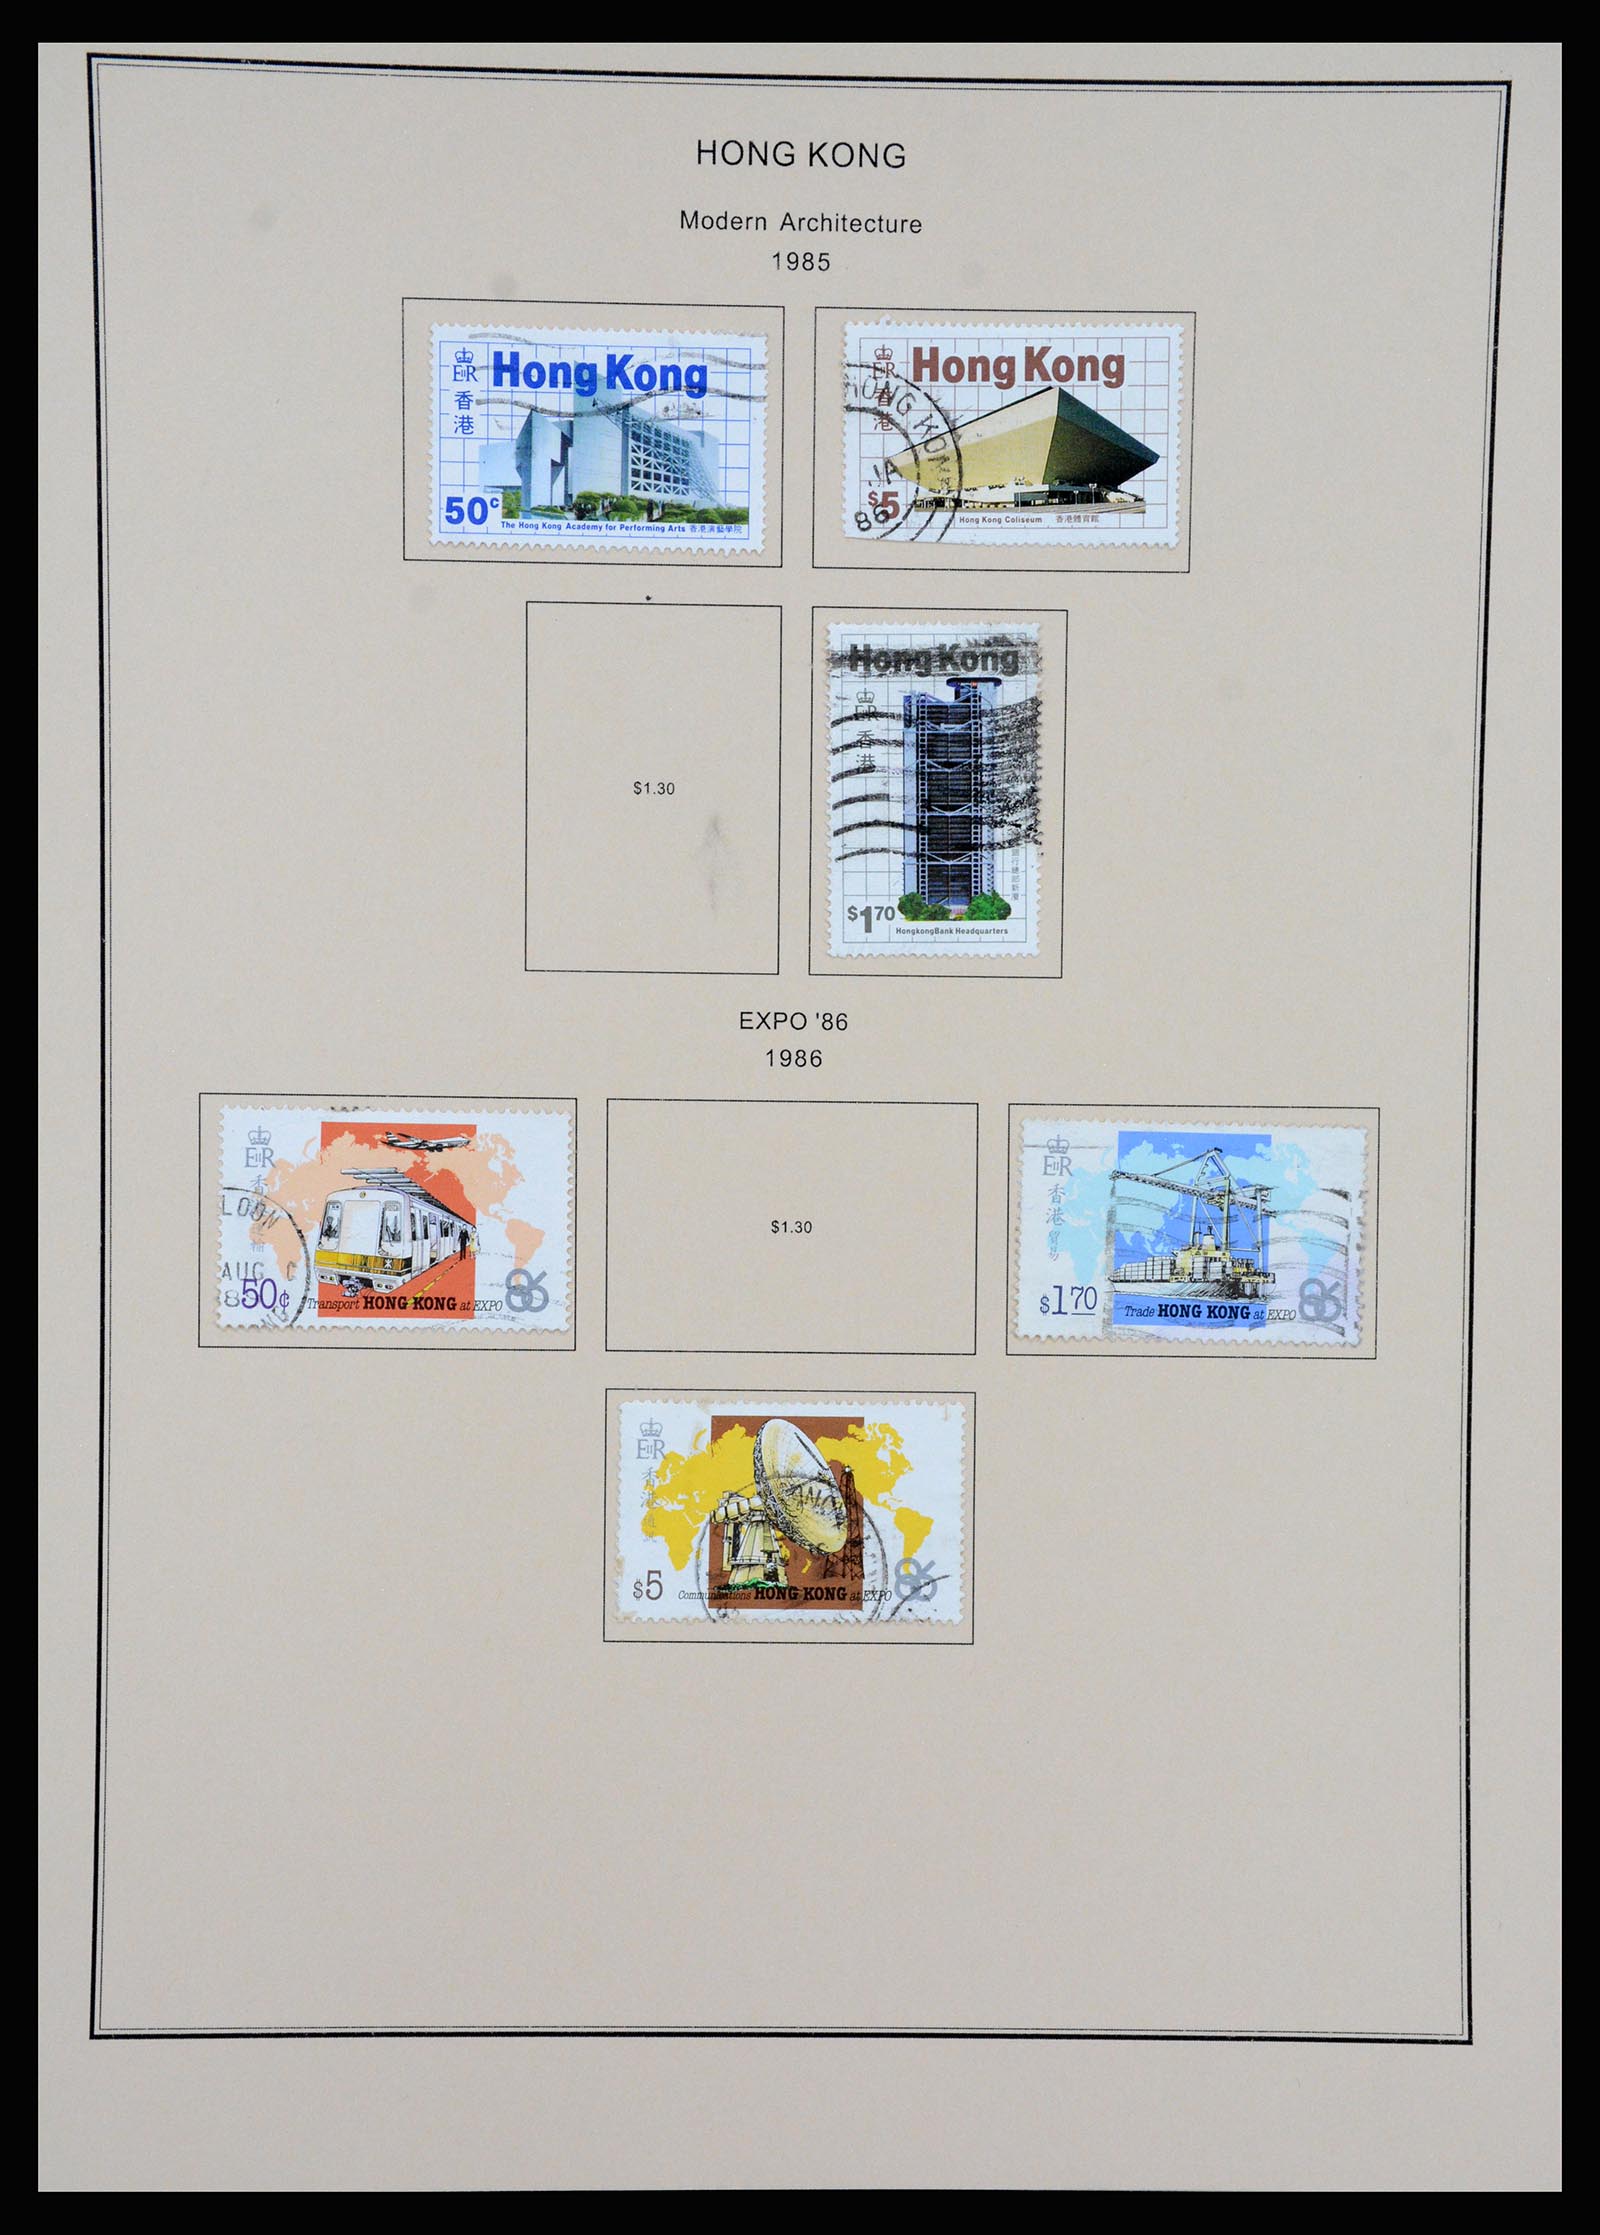 37210 053 - Stamp collection 37210 Hong Kong 1862-2000.